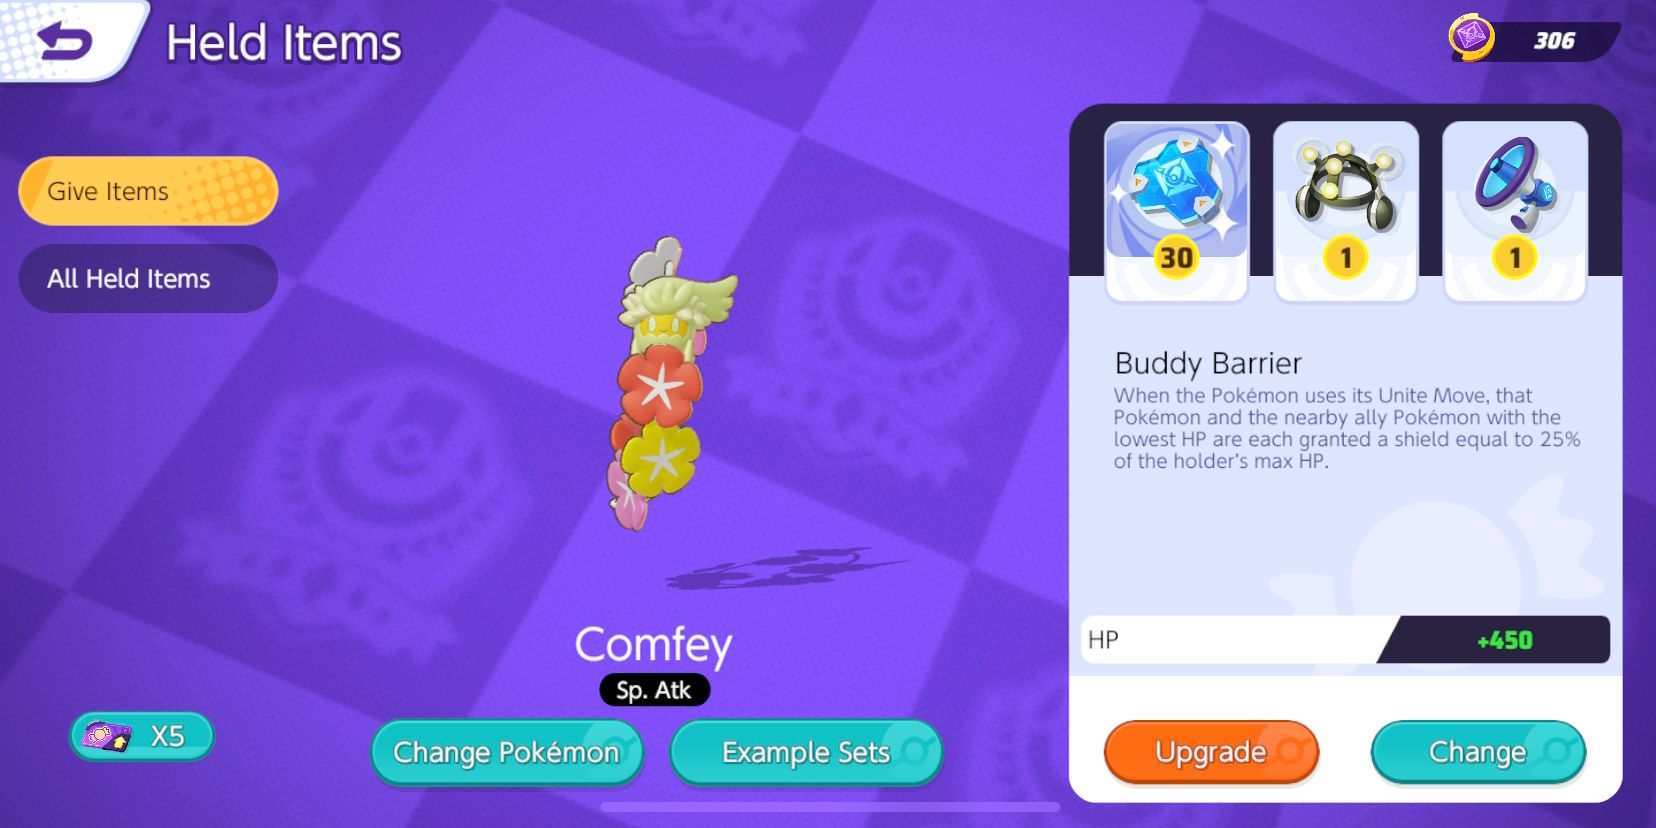 Comfey's Held Item-valgskærm med Buddy Barrier, Exp.  Del og Energiforstærker valgt